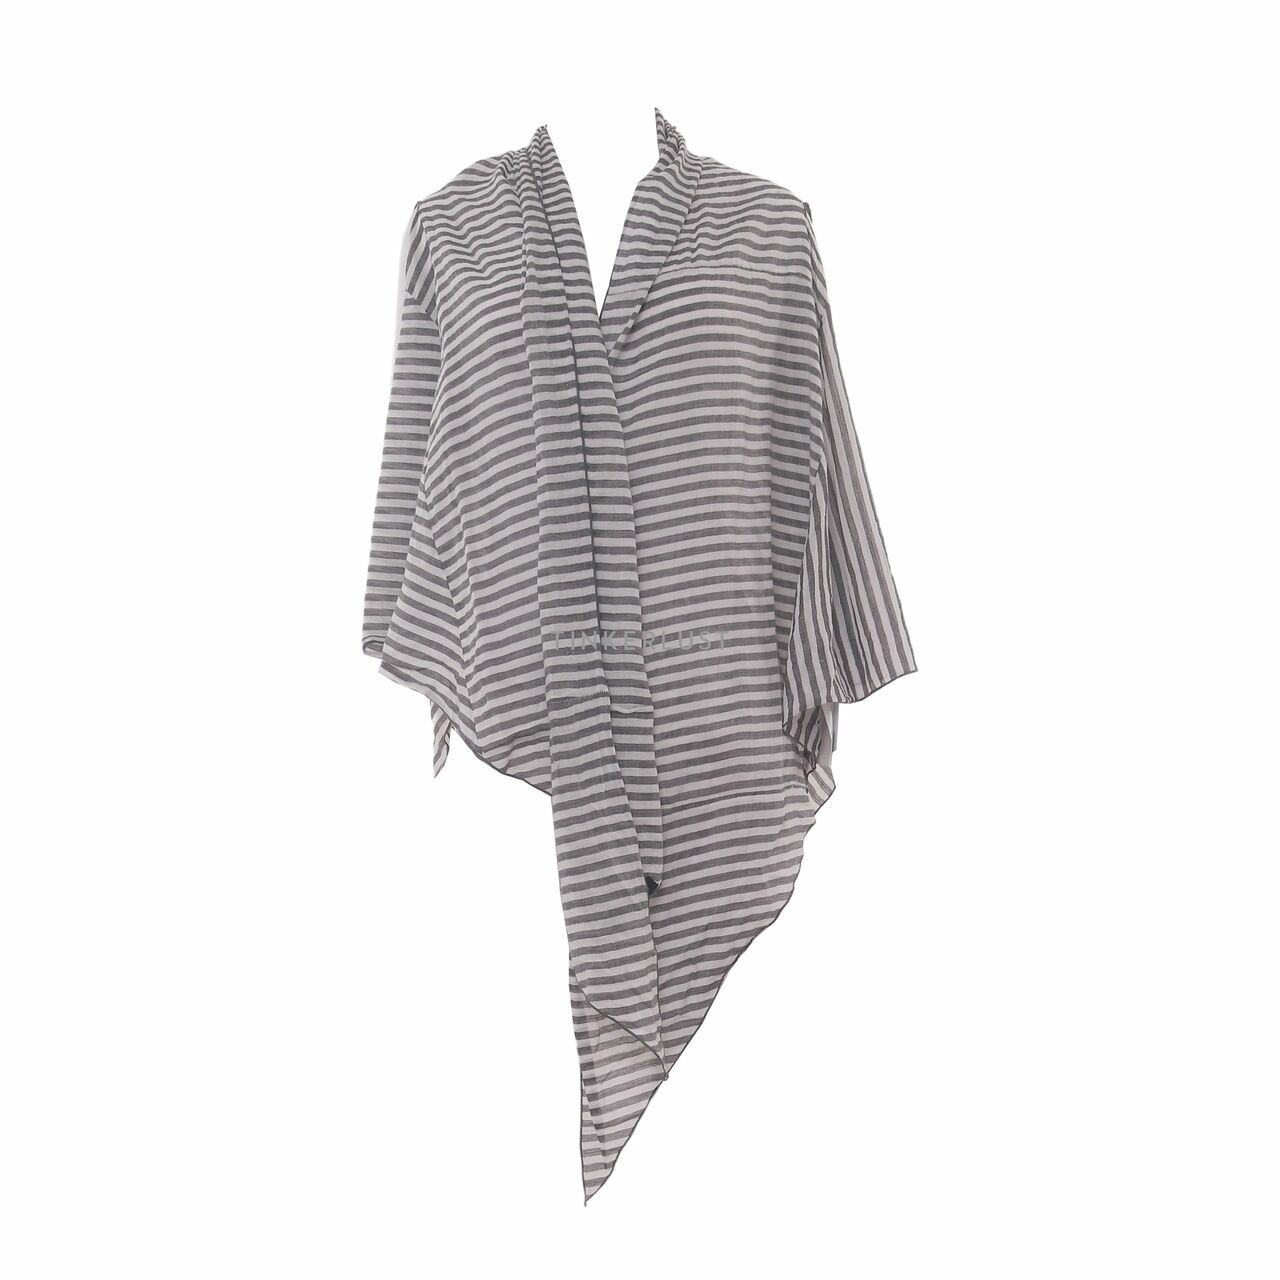 Biasa Stripes Grey/White Outerwear 